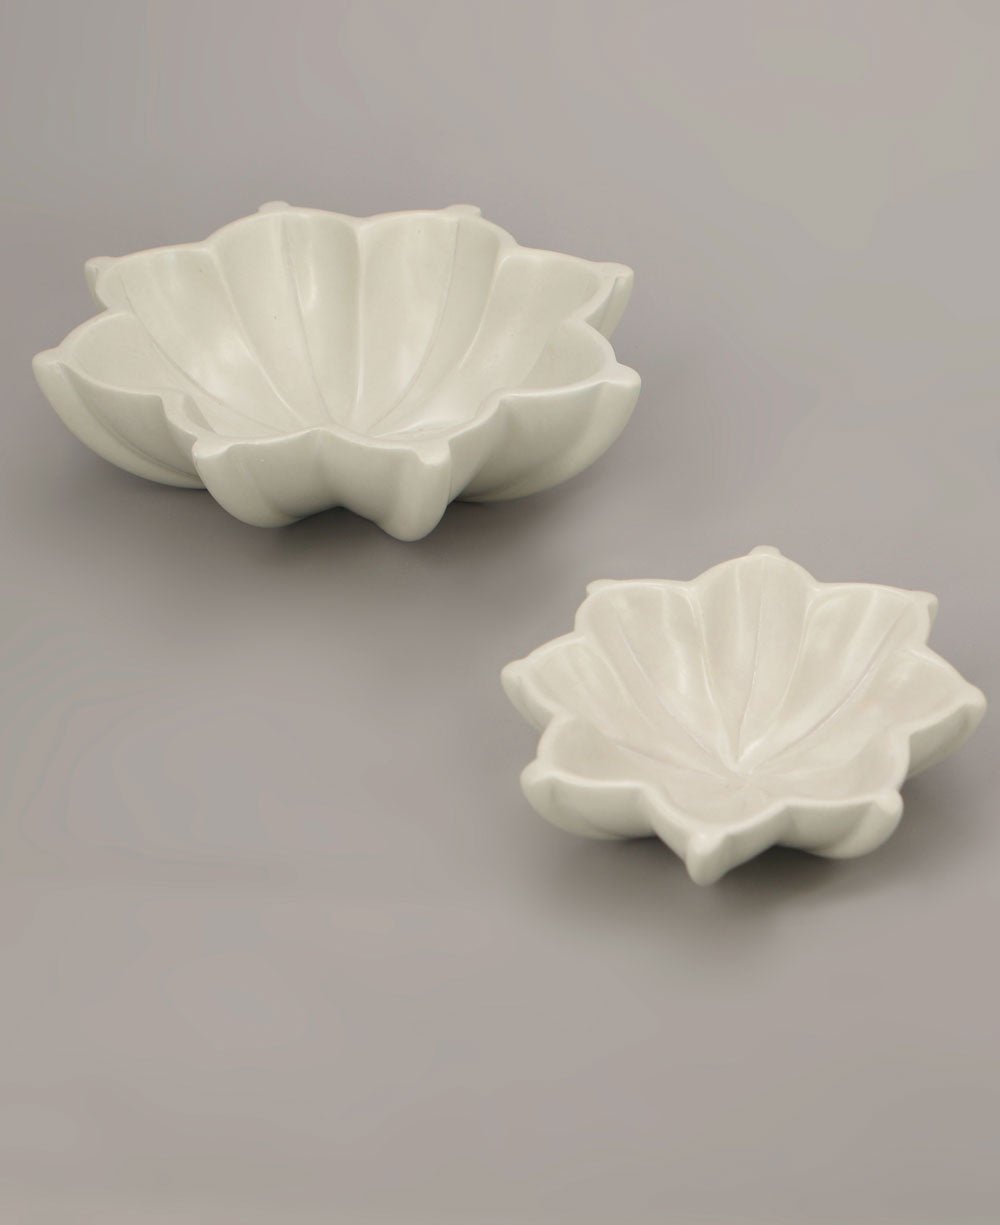 Artisan Hand-Carved Lotus Soapstone Bowls, Kenya - Bowls Small